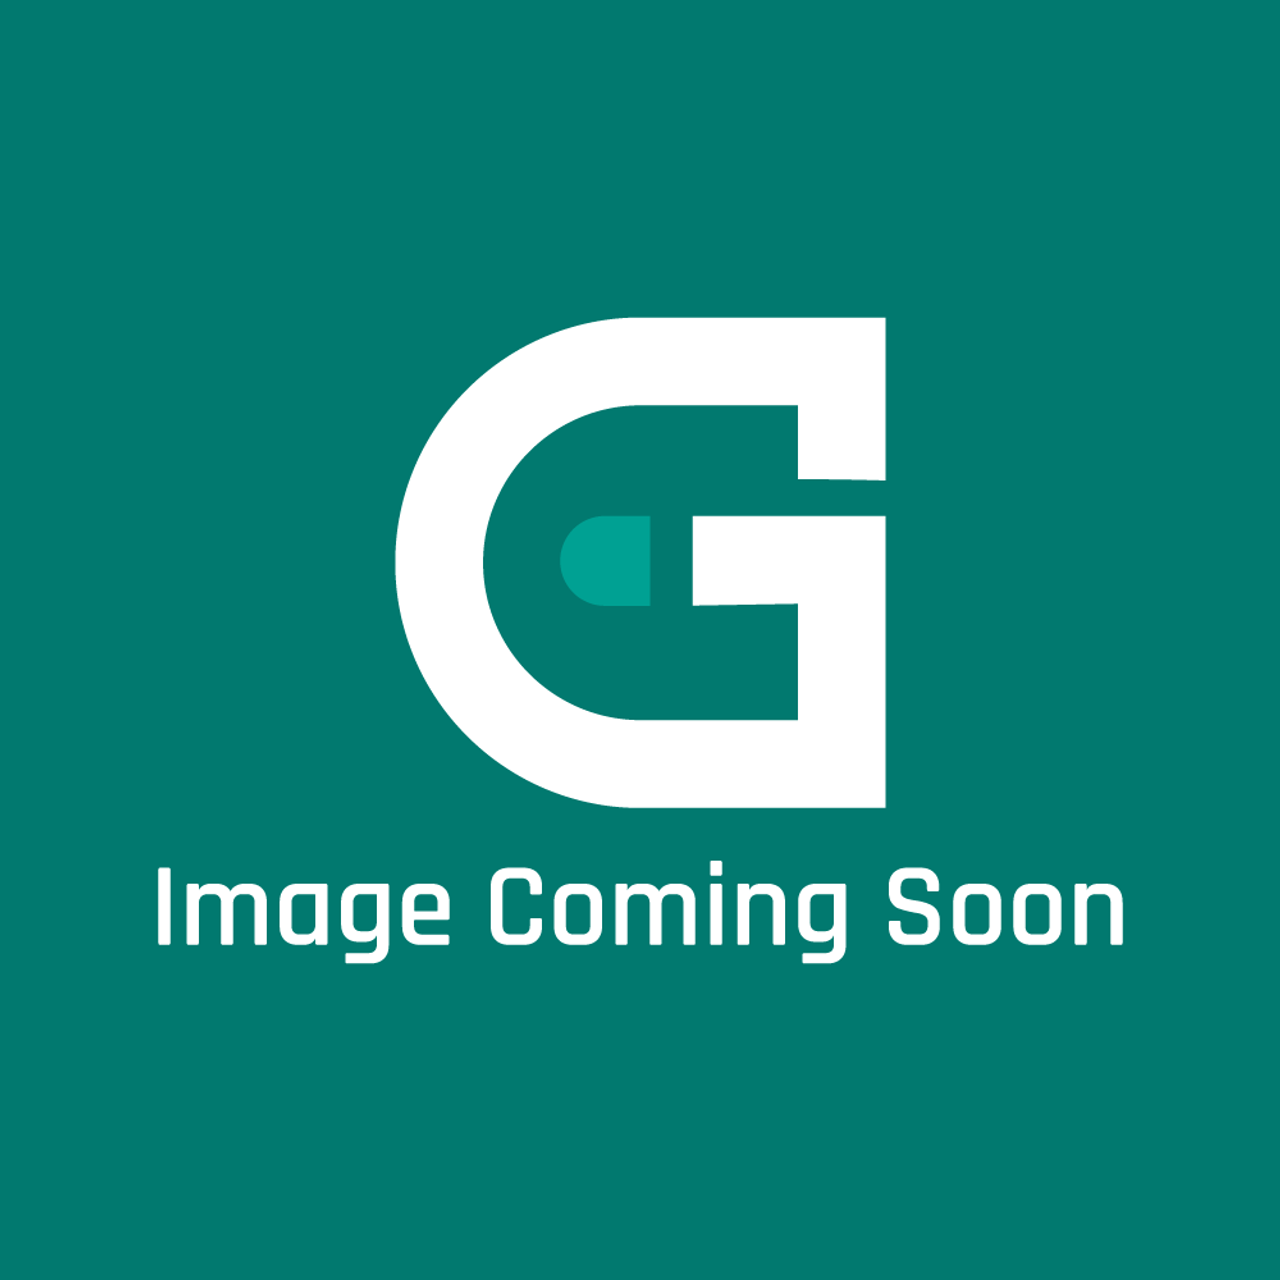 Garland CK02-514 - Lock Pin Spacer Kit - Image Coming Soon!